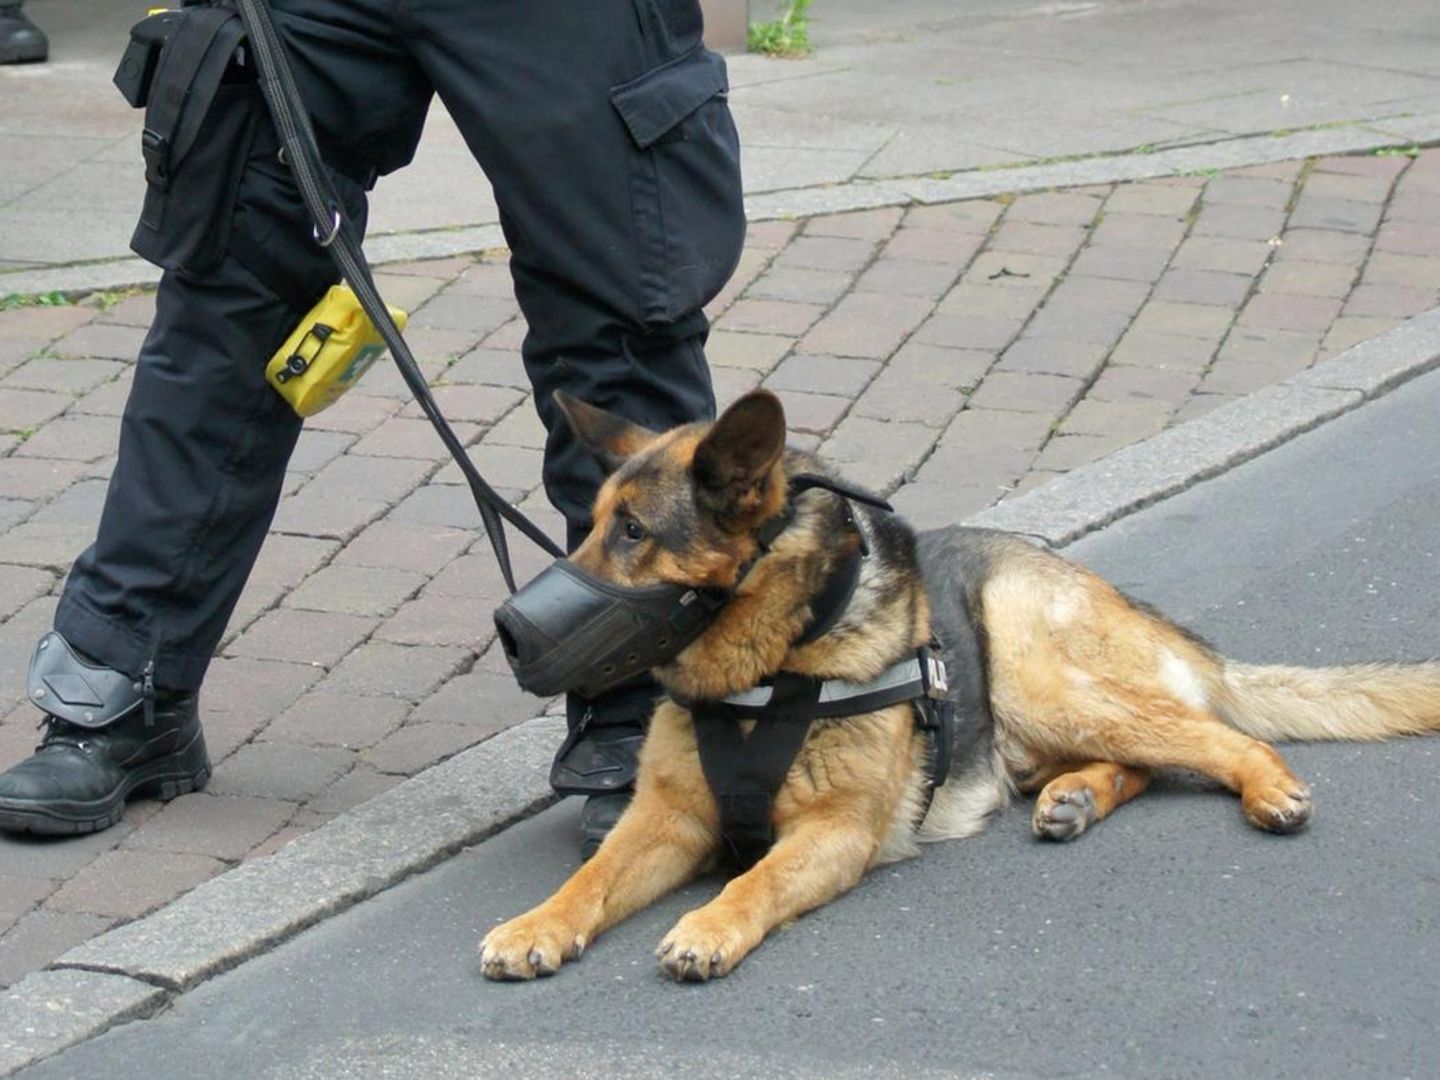 München, Deutschland. 09 Mai, 2019. Polizei Hund, Hund am Arbeitsplatz  Sporn - Puffs auf der Tasche. Sprengstoffe, Uniformen, Polizei, Polizei.